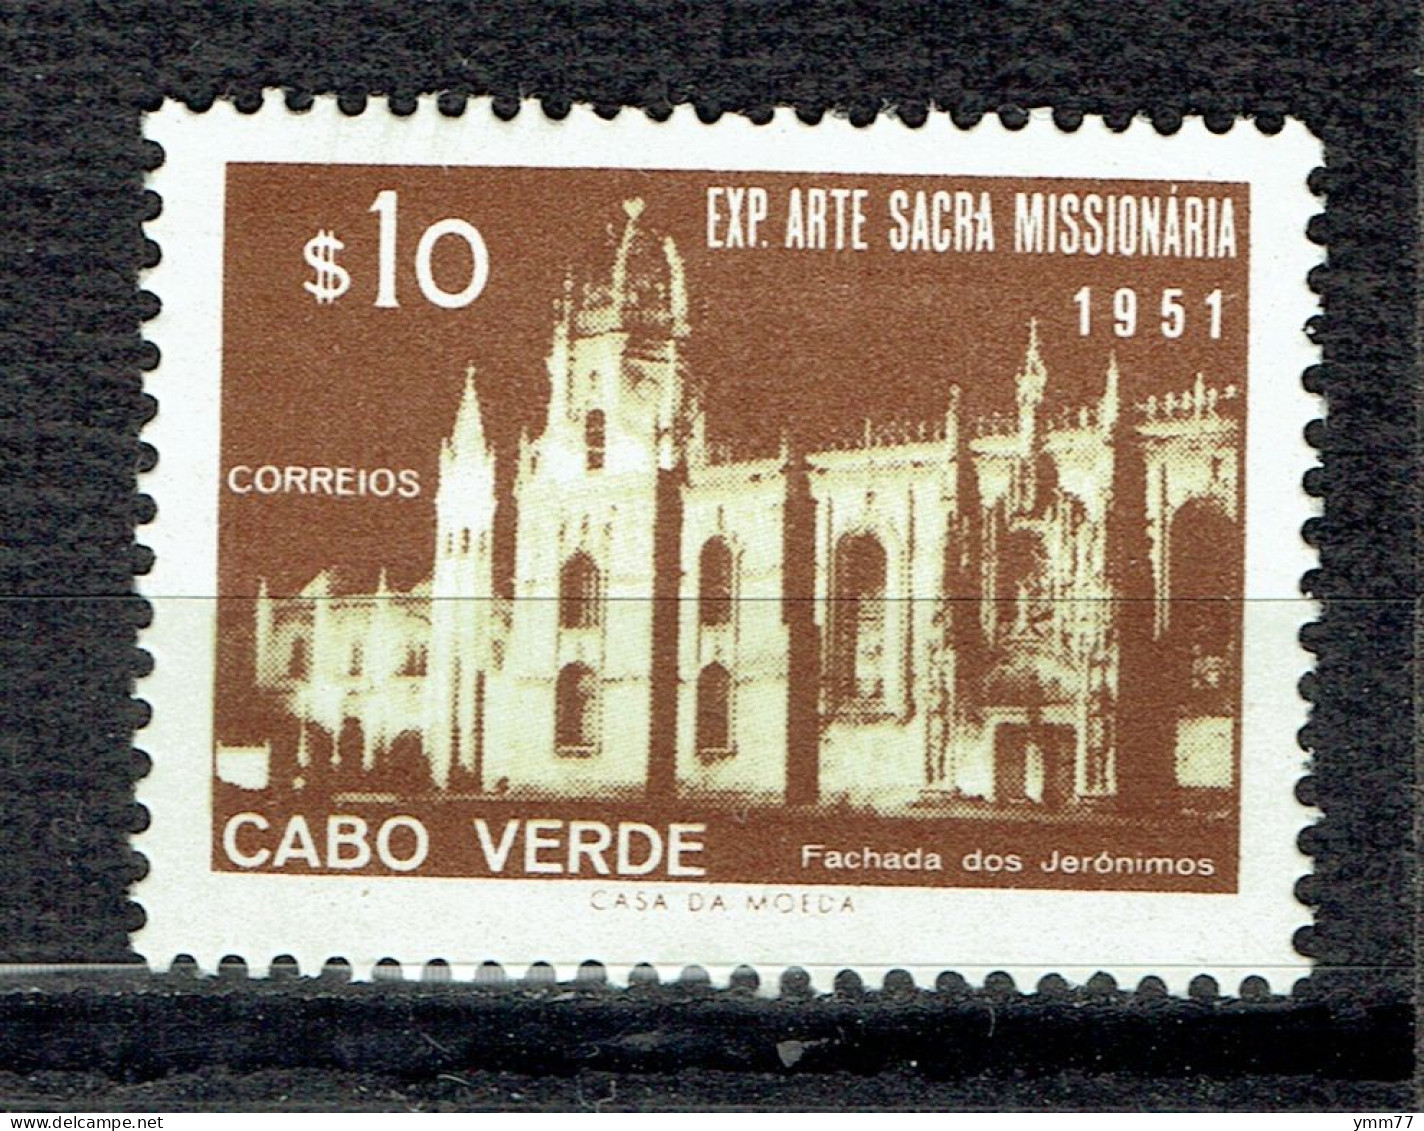 Exposition D'art Missionnaire à Lisbonne : Couvent Des Jéronimes - Kaapverdische Eilanden